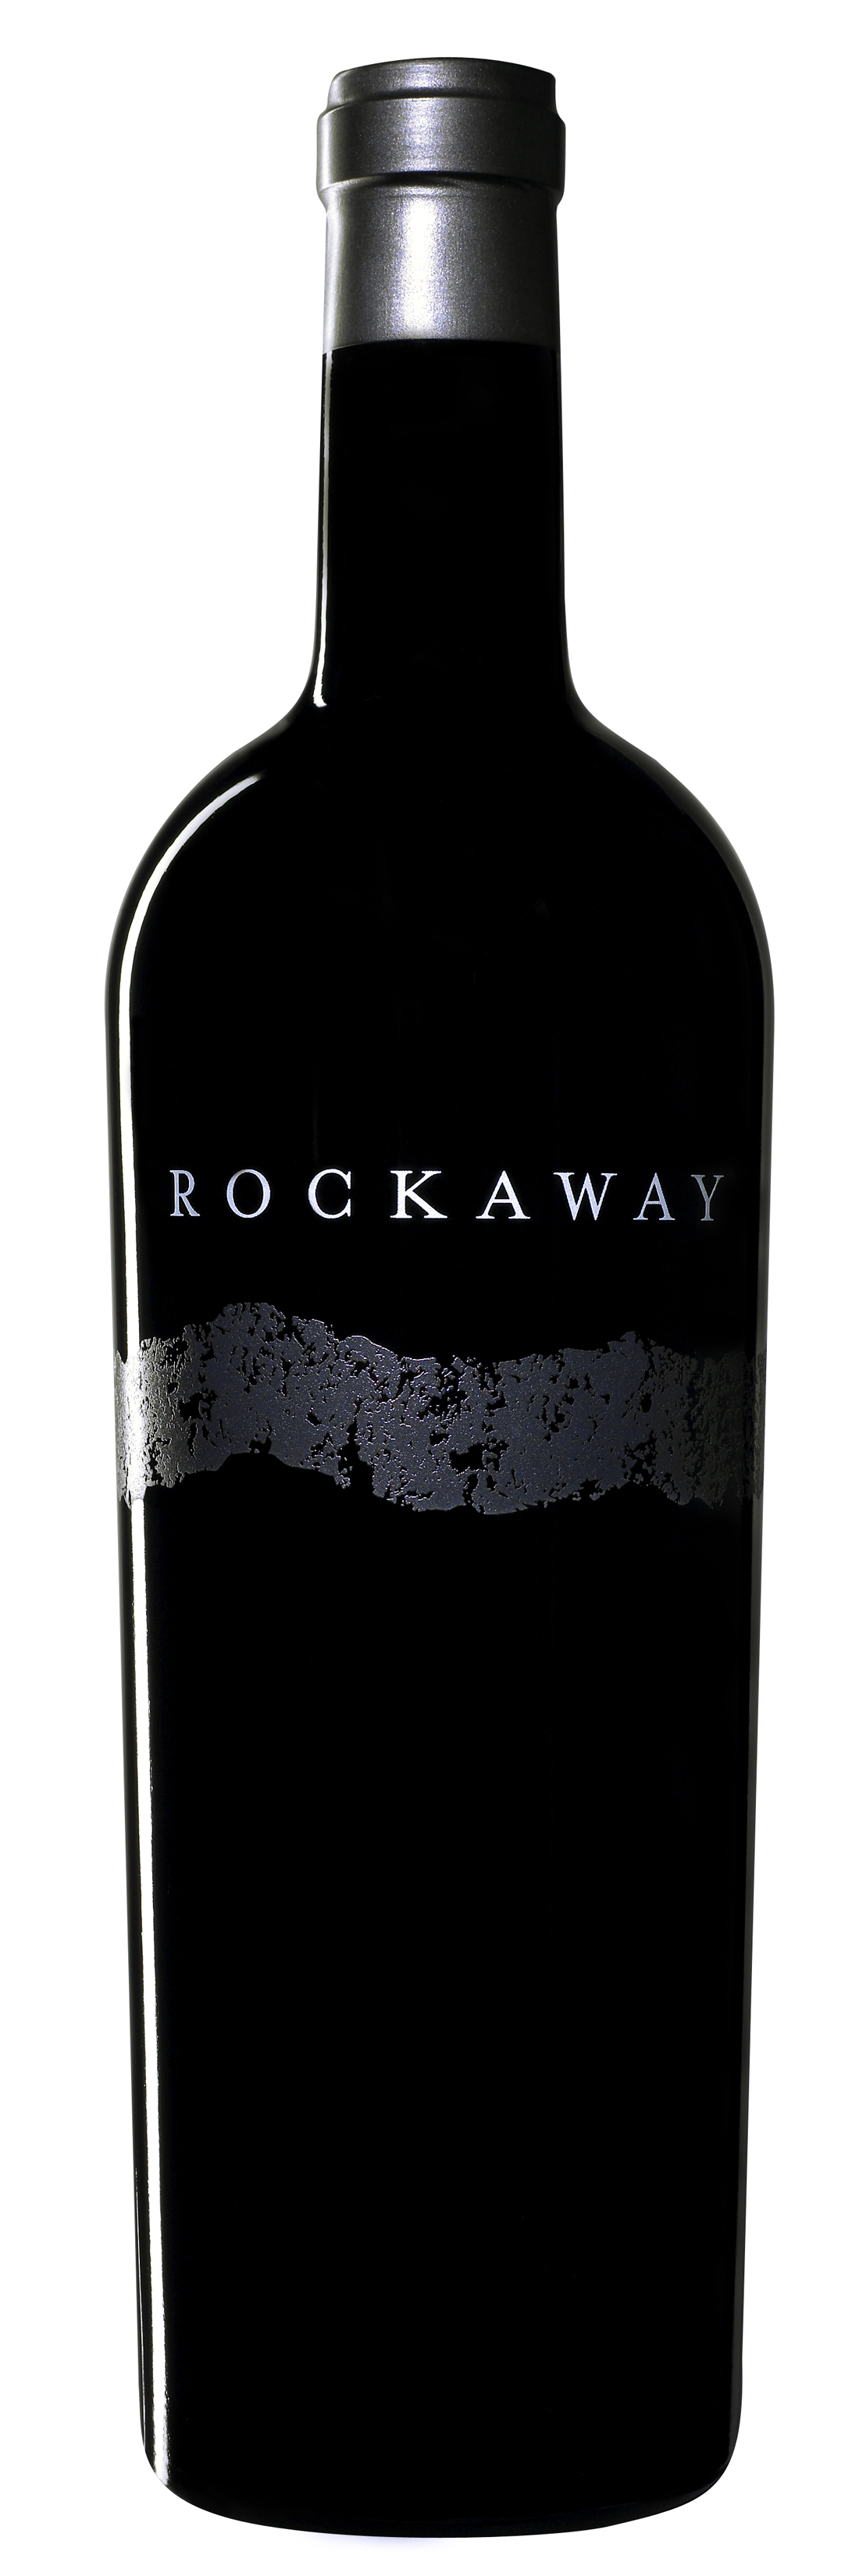 2010 Rockaway